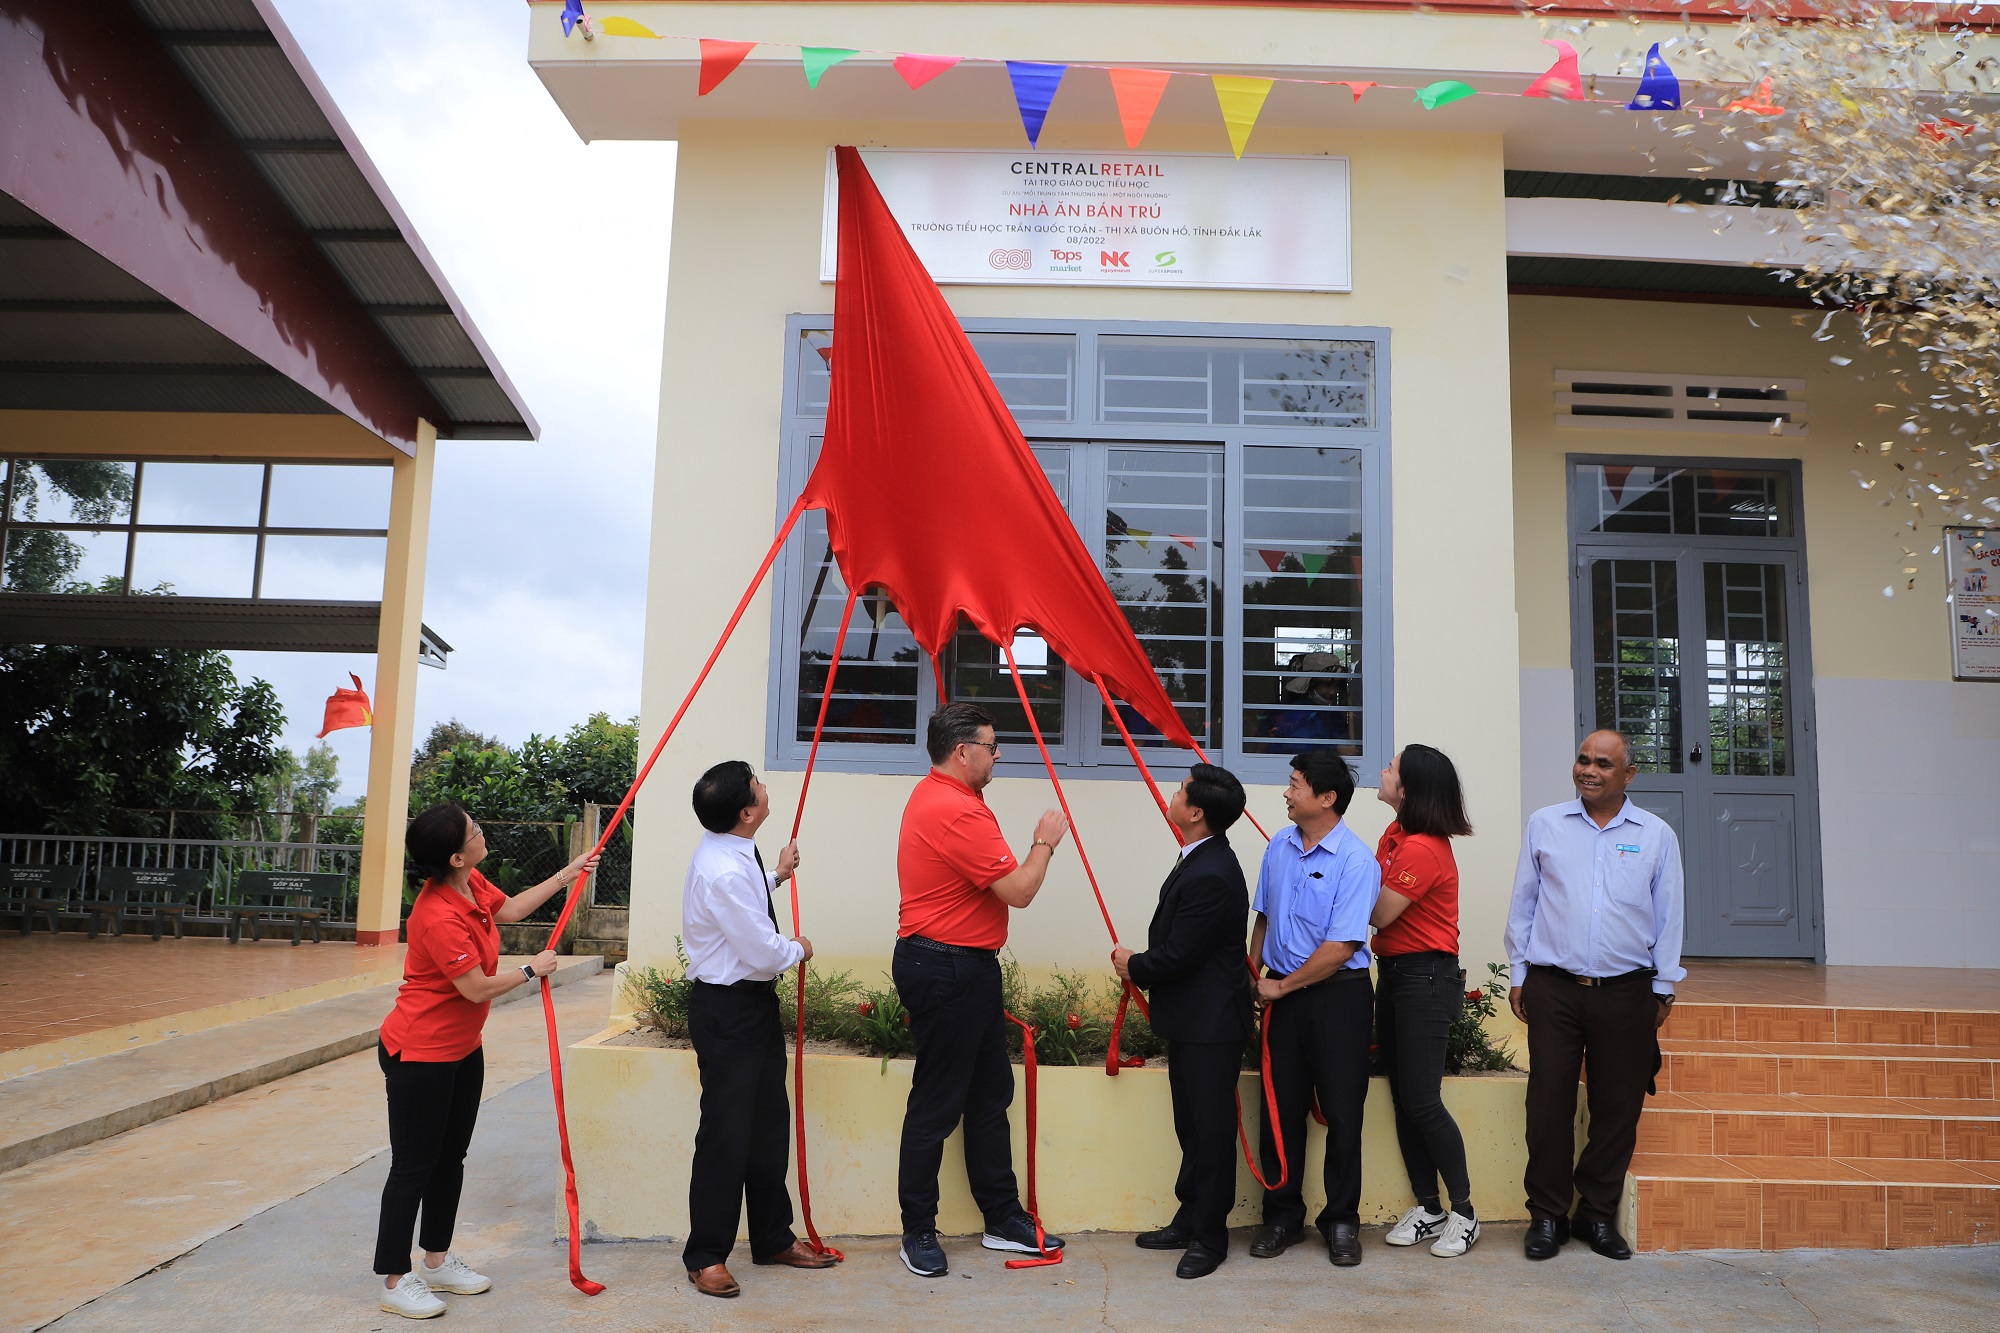 Central Retail trao tặng Nhà ăn bán trú cho Trường tiểu học Trần Quốc Toản, Đắk Lắk